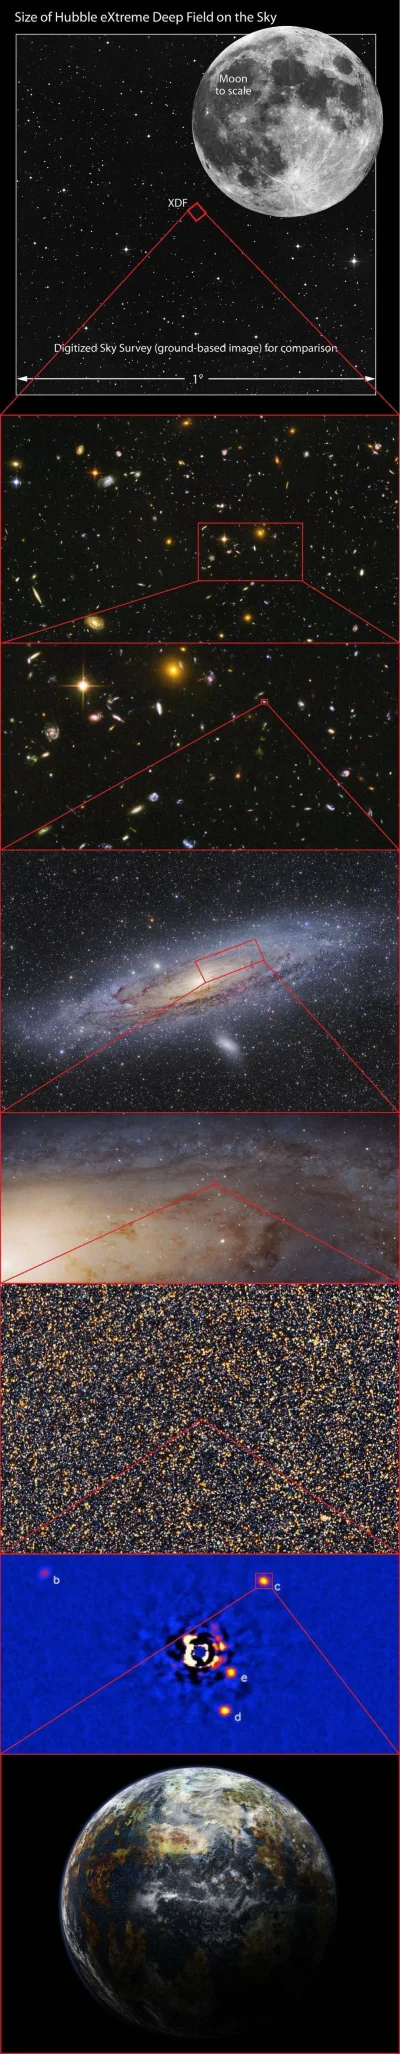 L.....s - @Atexor: Polecam - przedstawia skalę i ilość galaktyk, wszystkie zdjęcia po...